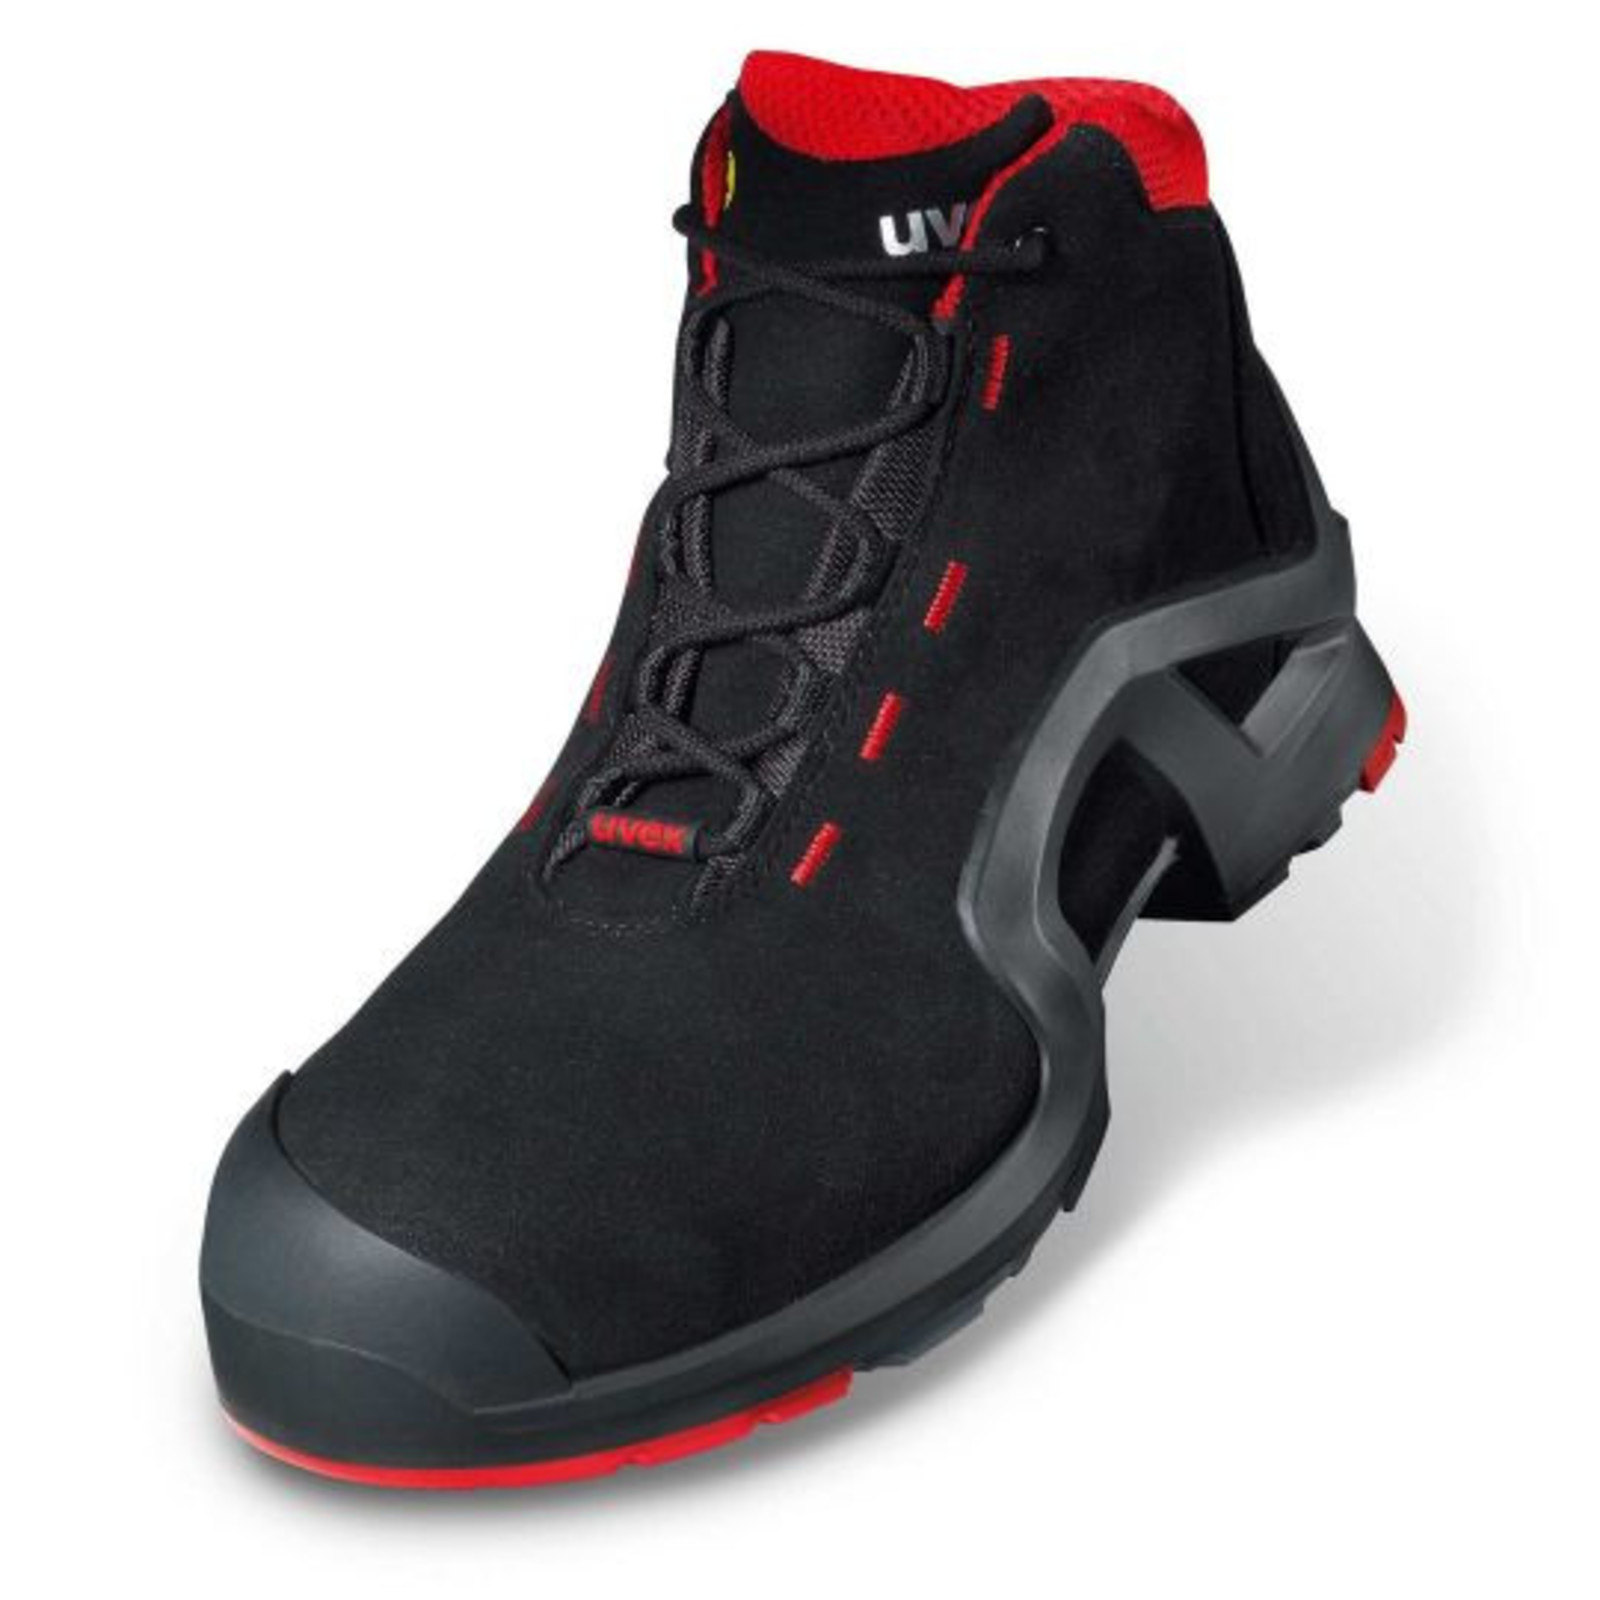 Vysoká bezpečnostná obuv Uvex 1 x-tended support S3 85172 - veľkosť: 39, farba: čierna/červená